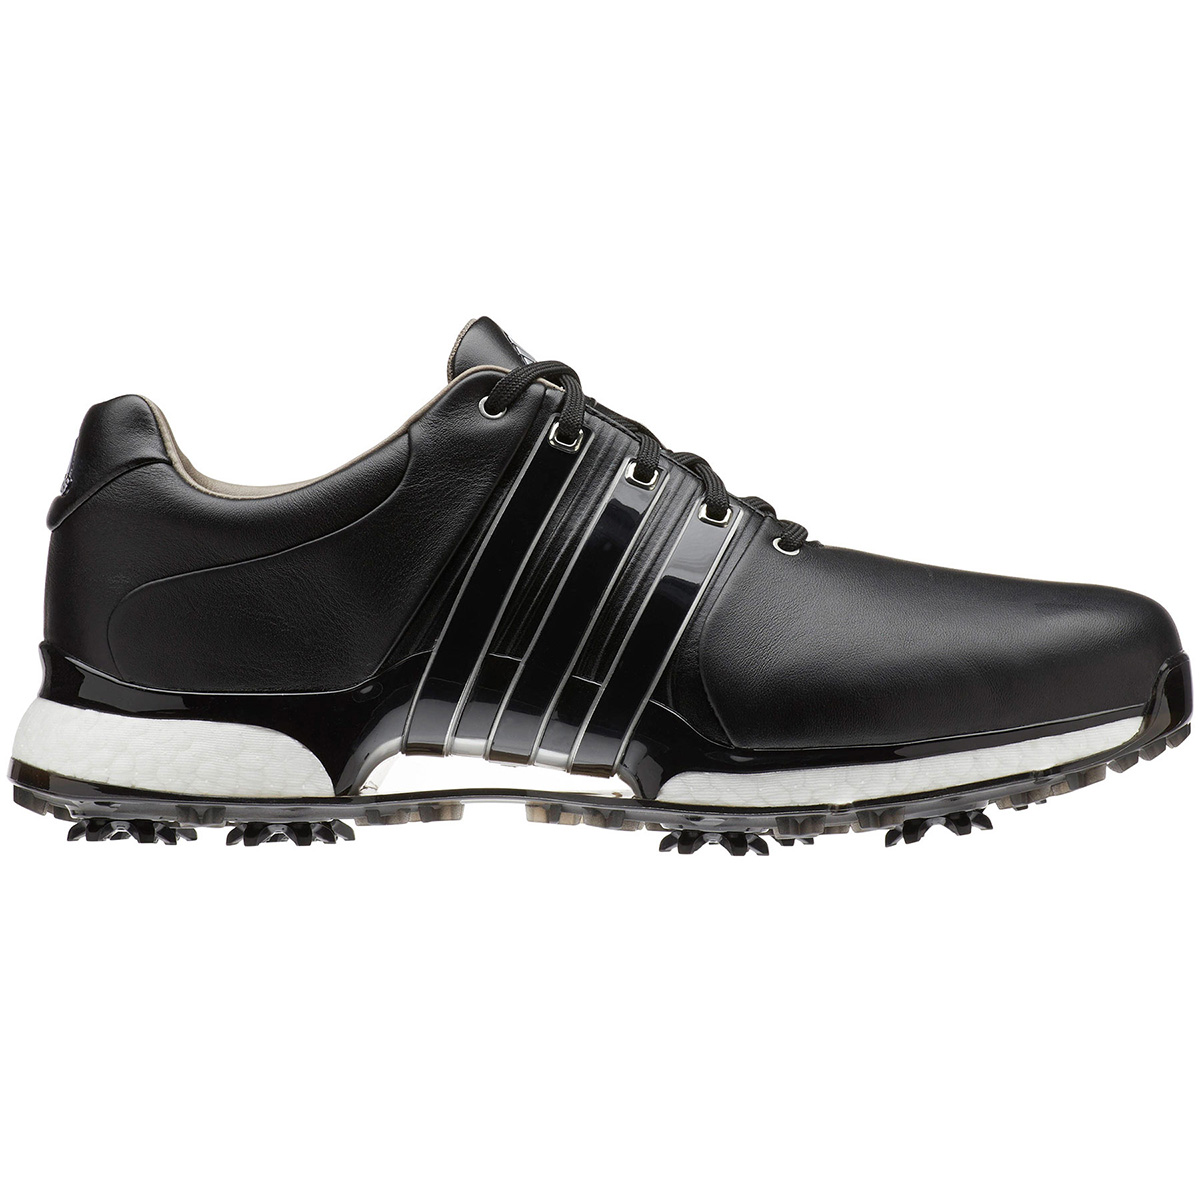 adidas tour 360 xt spikeless golf shoes